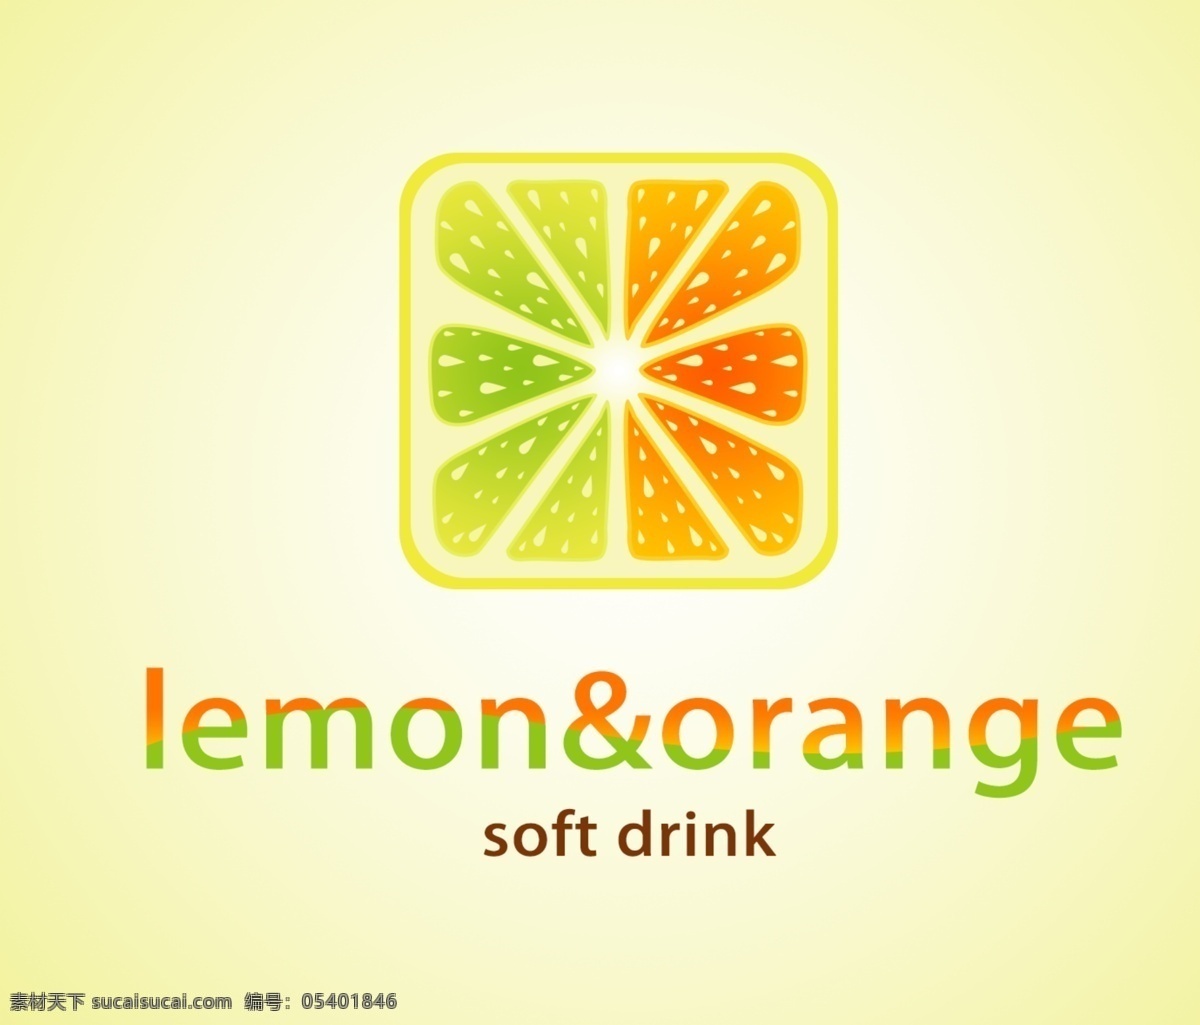 饮料标志设计 饮料 标志 psd源文件 饮料可乐 果汁 logo 标志图标 企业